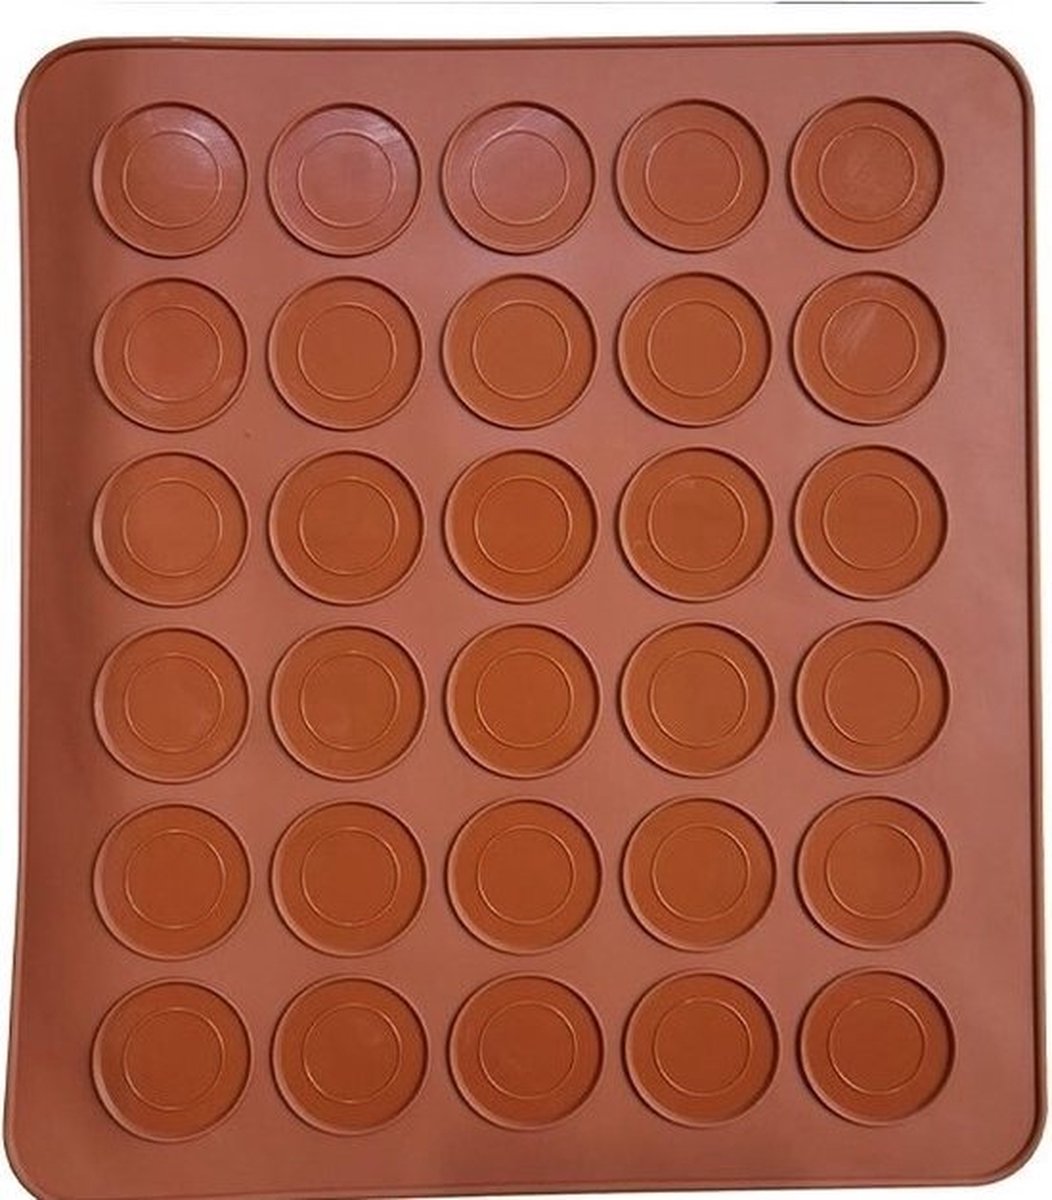 Macarons bakmat - Voor 30 stuks - Macaron - Siliconen bakvormen - Set - Vaatwasserbestendig - Ovenbestendig - Macarons mat - Ovenmat